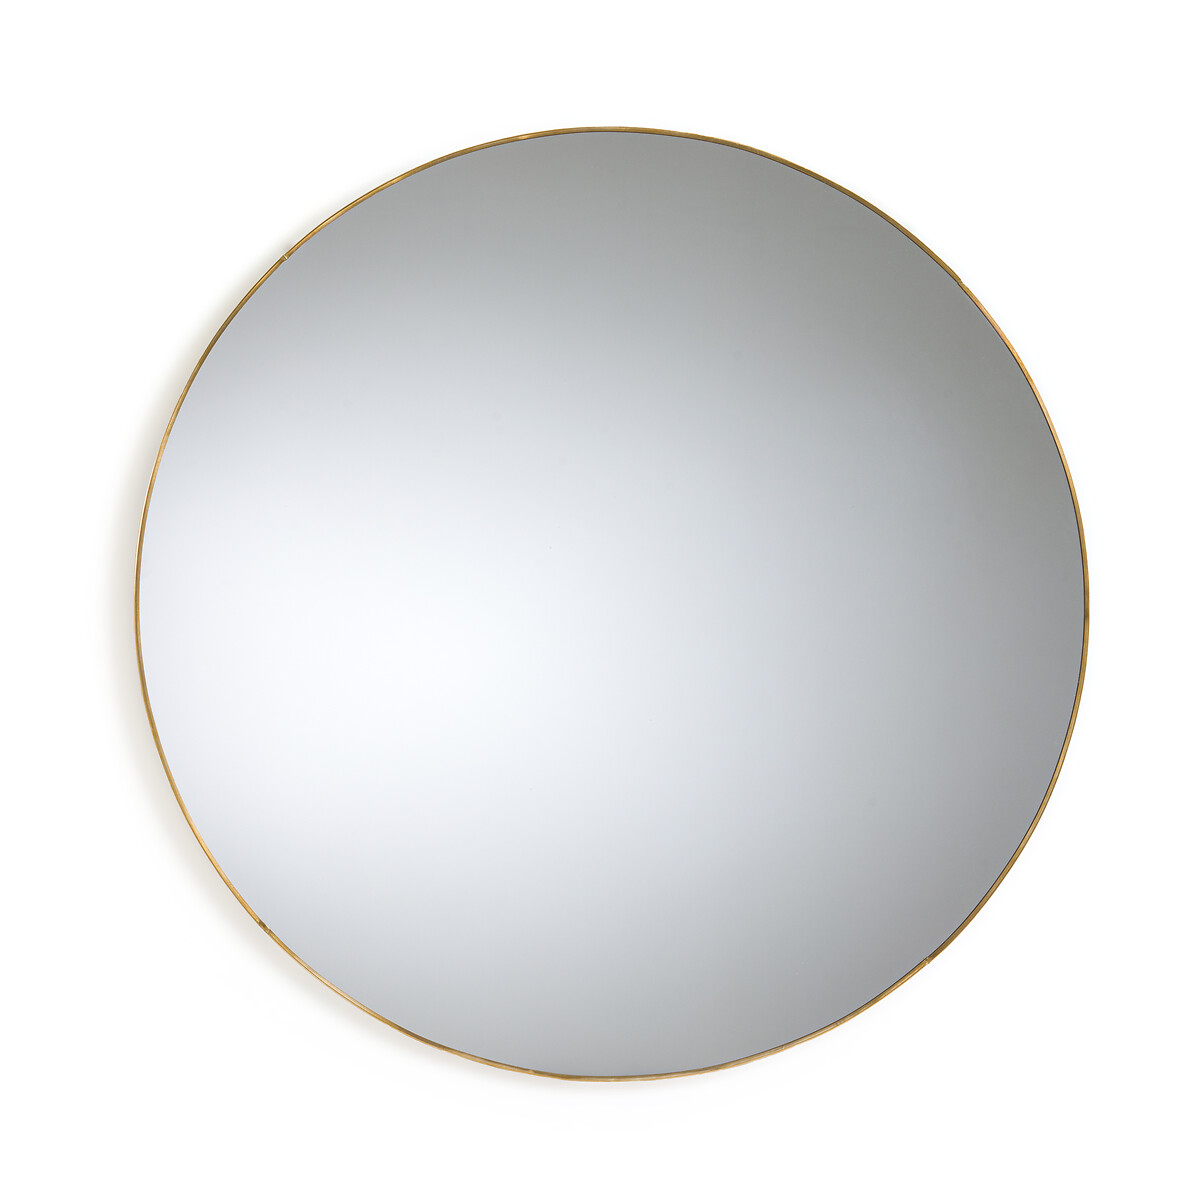 Зеркало Круглое из металла 70 см Uyova единый размер желтый